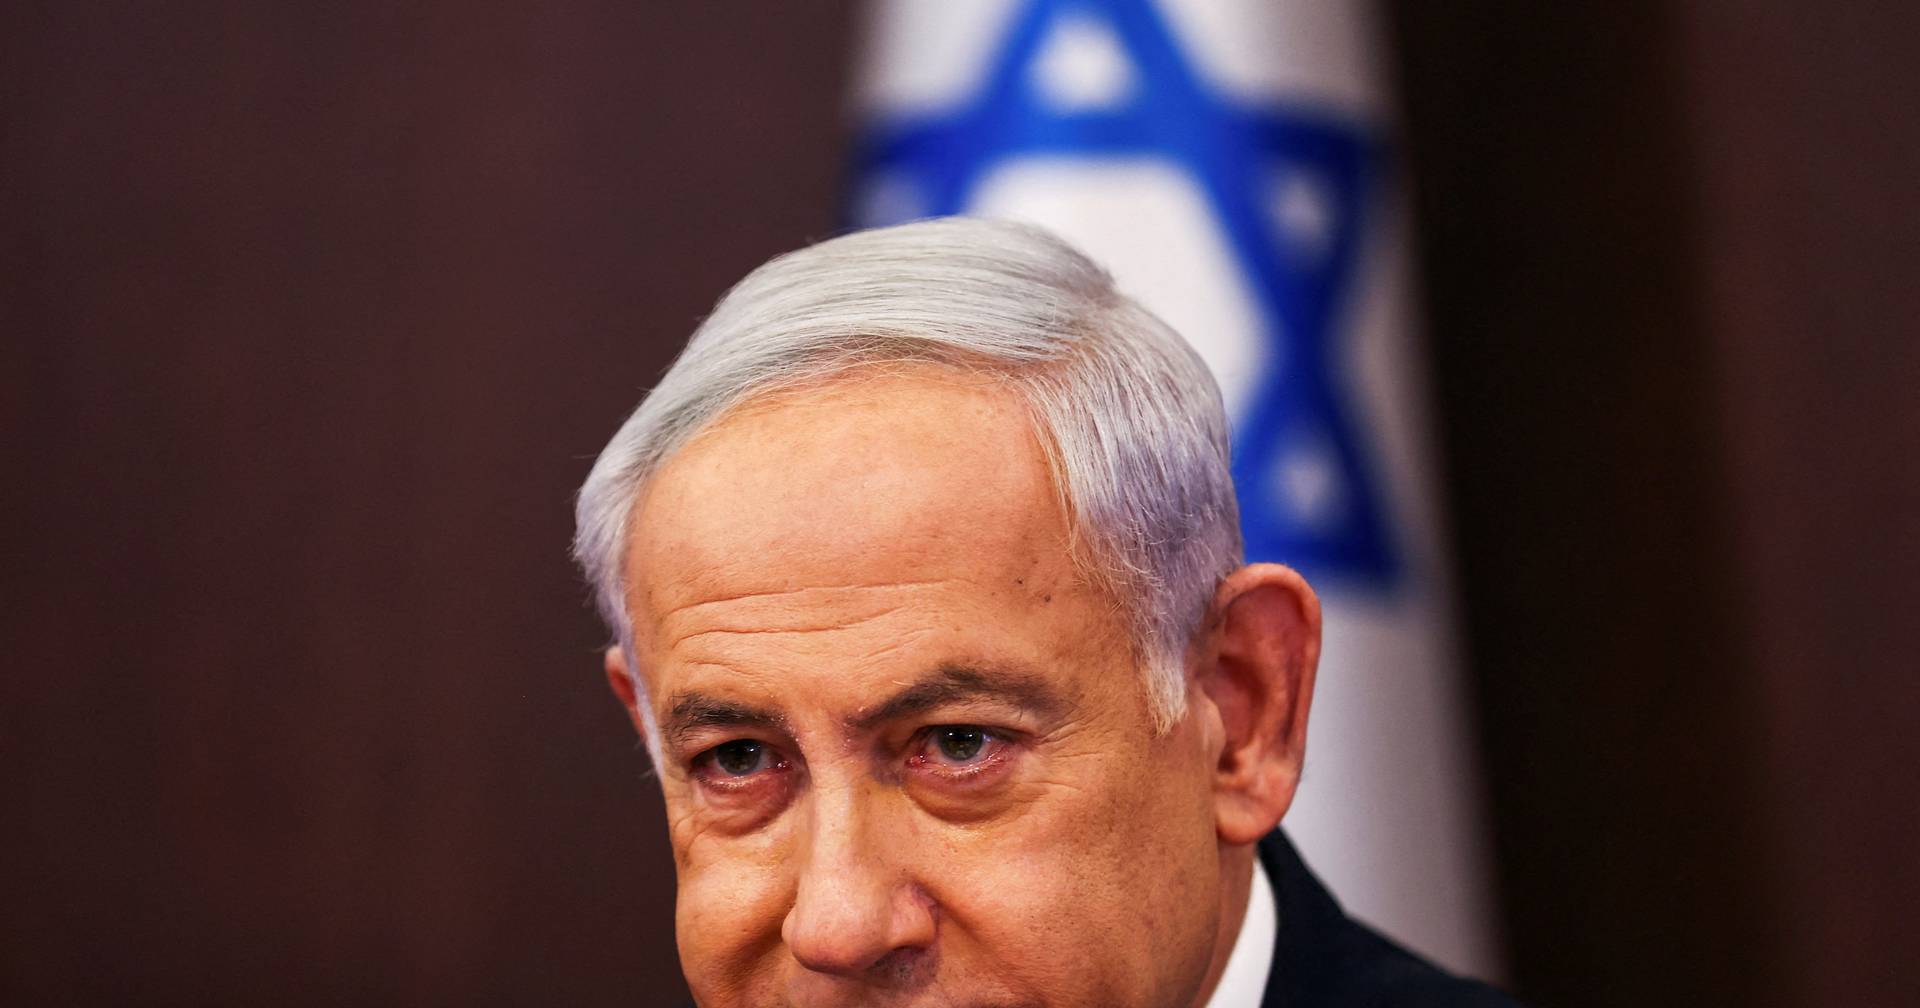 El primer ministro israelí se encuentra estable tras una operación de marcapasos